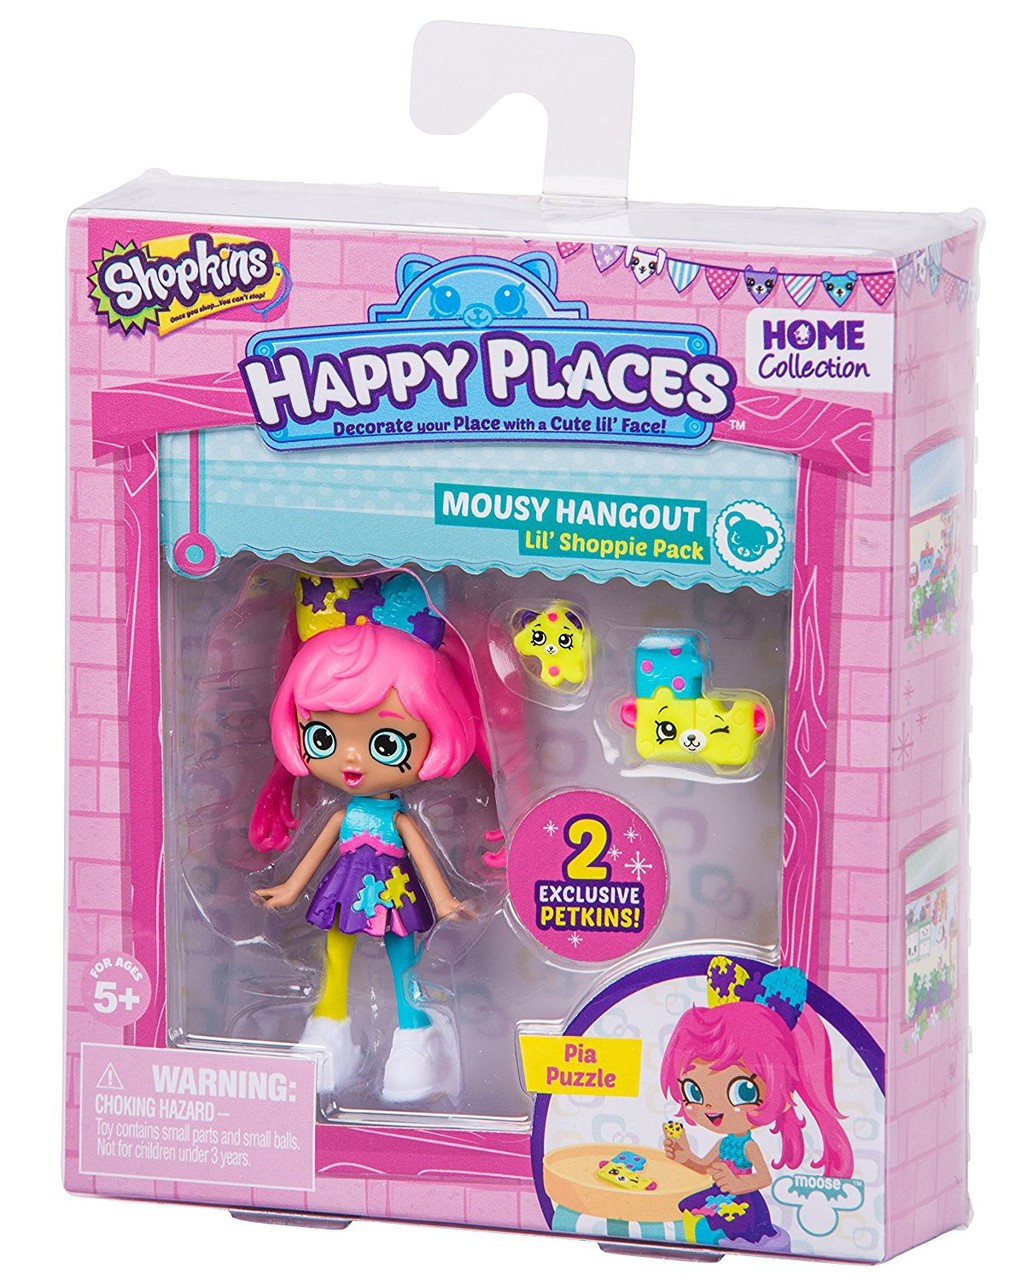 Shopkins Happy Places Series 2 Pia Puzzle Lil Shoppie Pack 119 120 Mousy Hangout Moose Toys Toywiz - pop peeps hangout roblox